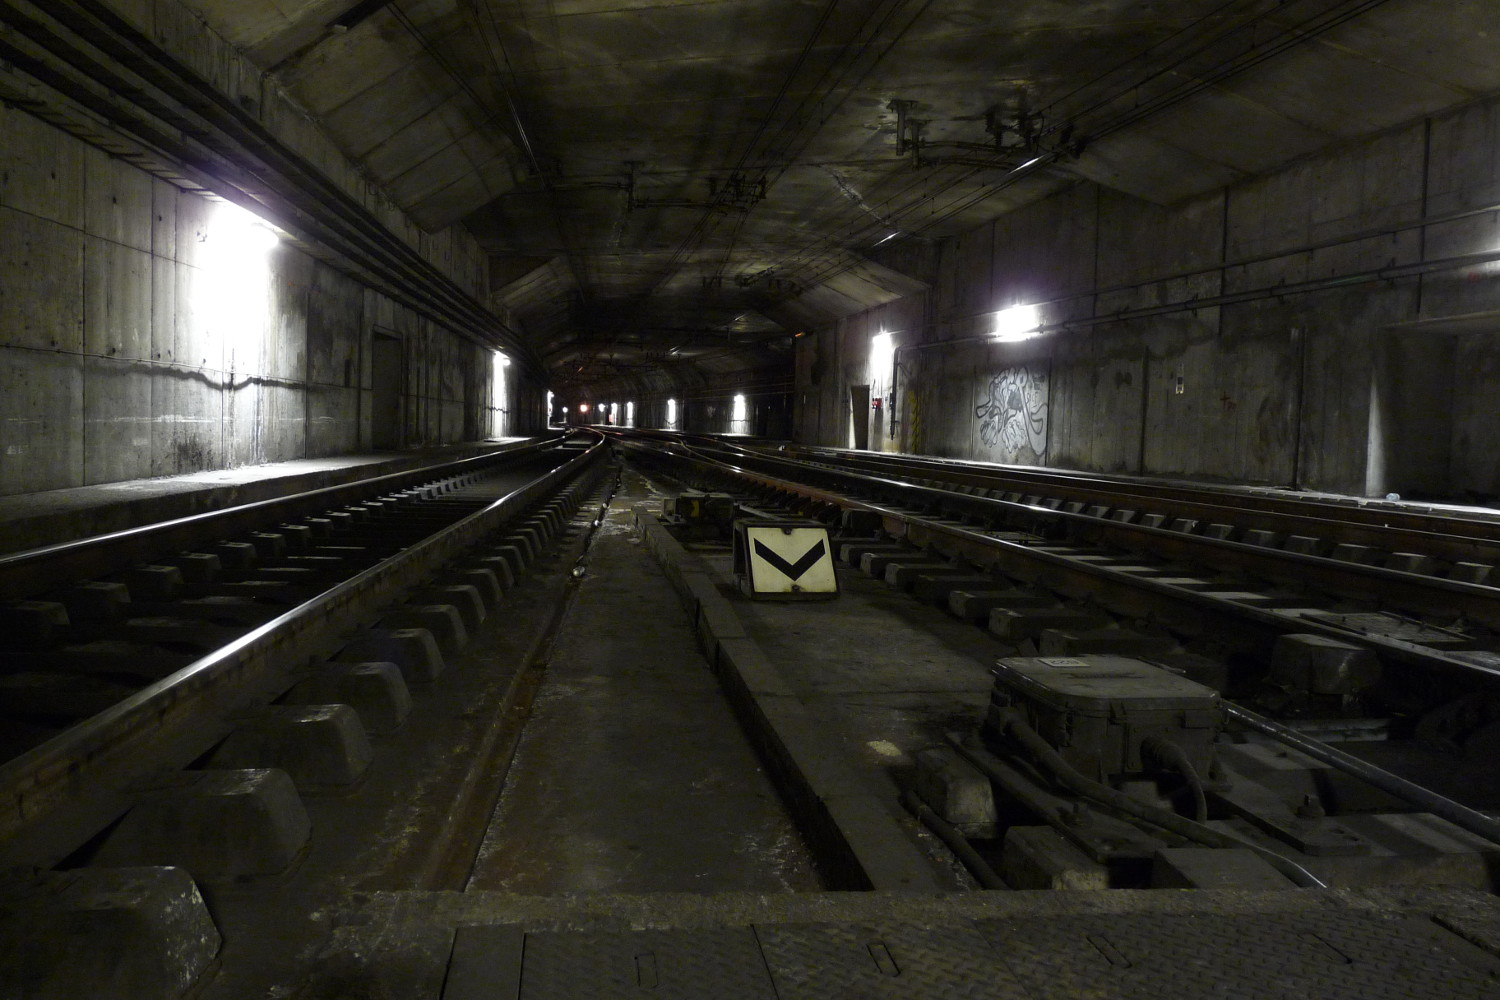 Les voies à la sortie de Gare de Lyon, en direction de Châtelet-les-Halles. Le tunnel est encore unique pour quelques centaines de mètres, avant de se séparer en deux tunnels monotubes.